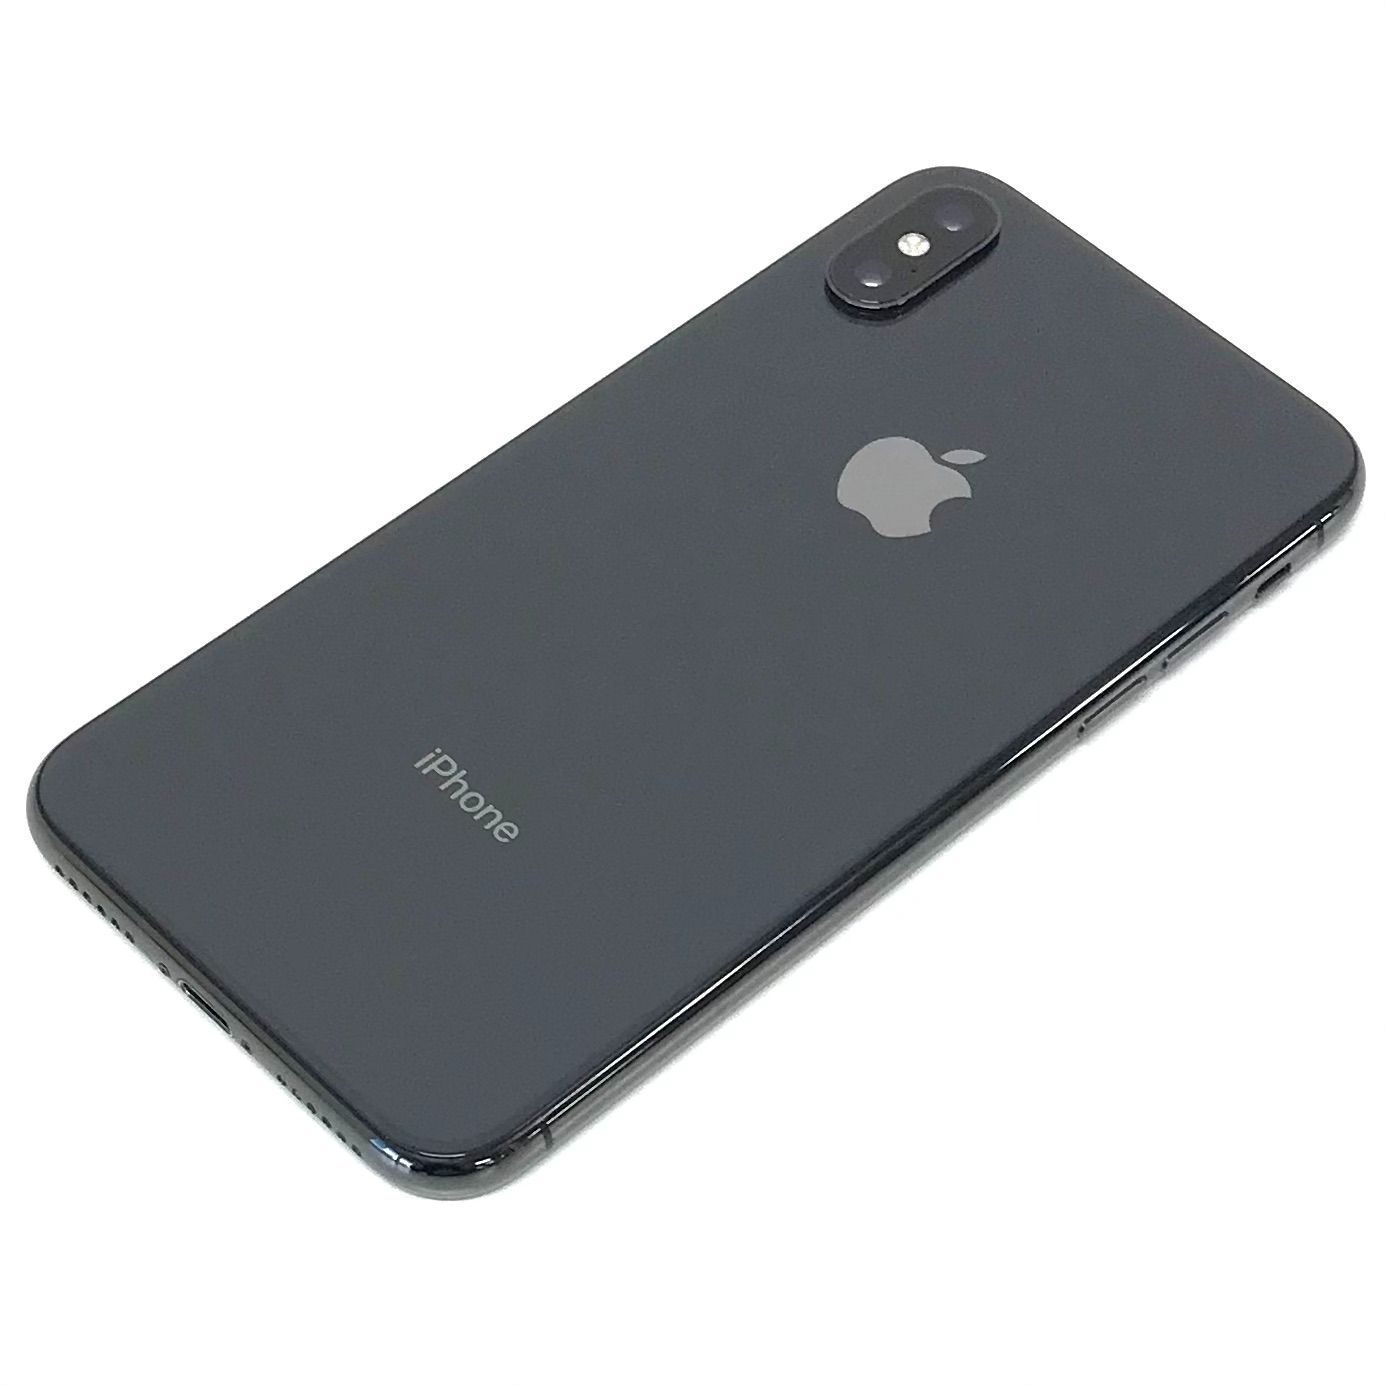 θ【SIMロック解除済み】iPhone X 256GB スペースグレイ - メルカリShops